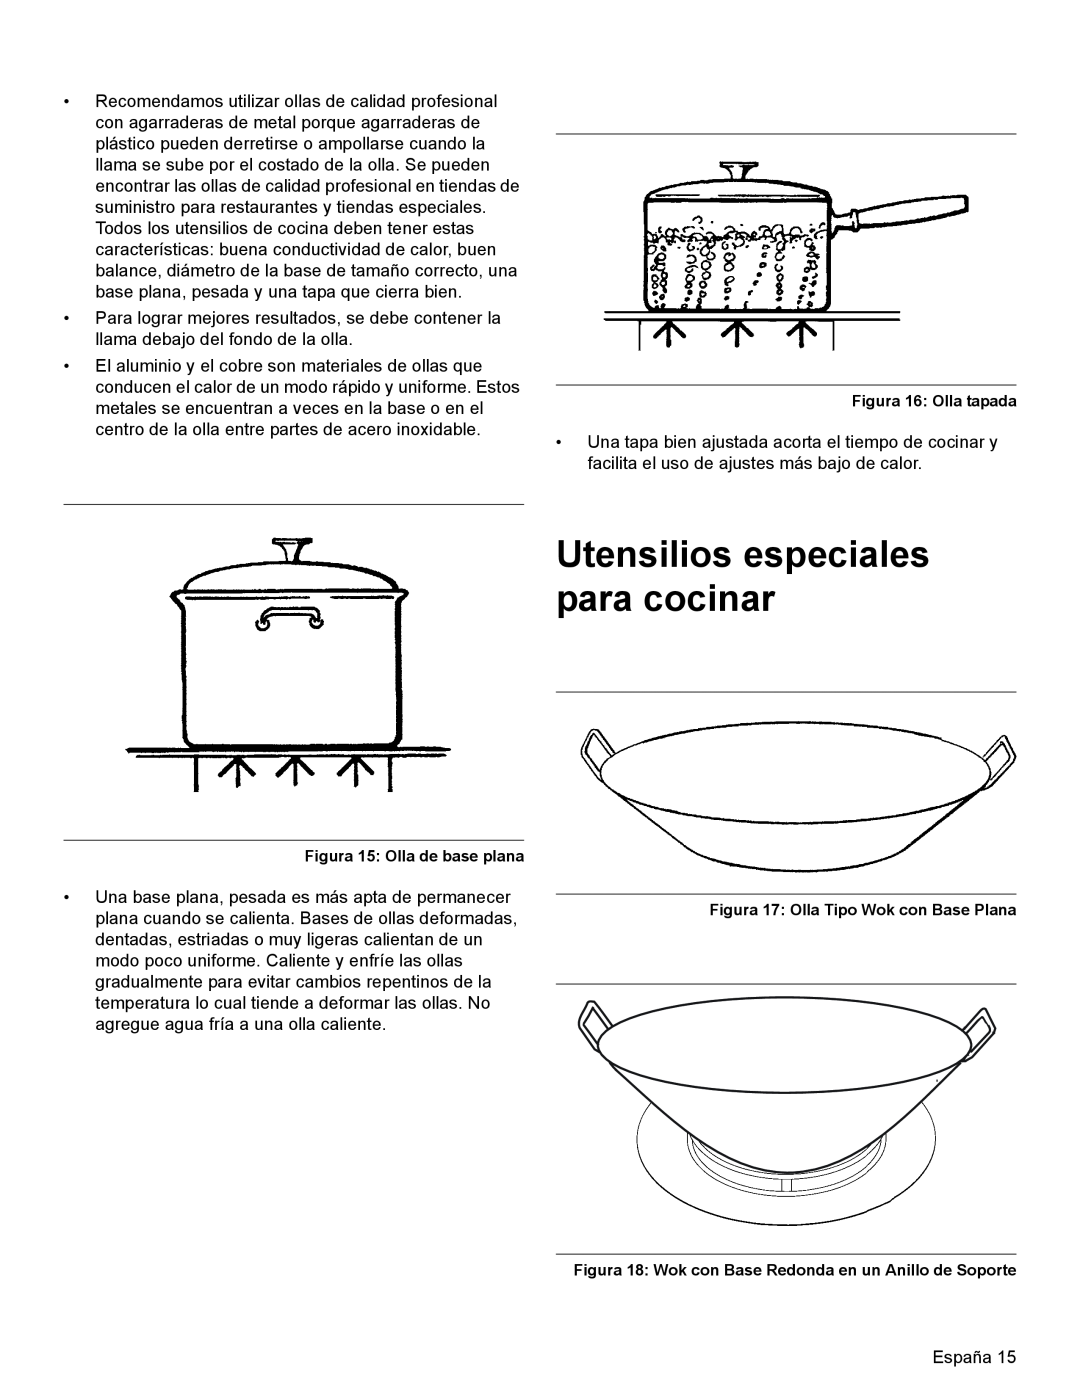 Thermador PRL36, PRG30, PRL30 manual Utensilios especiales para cocinar, Figura 16 Olla tapada, Figura 15 Olla de base plana 